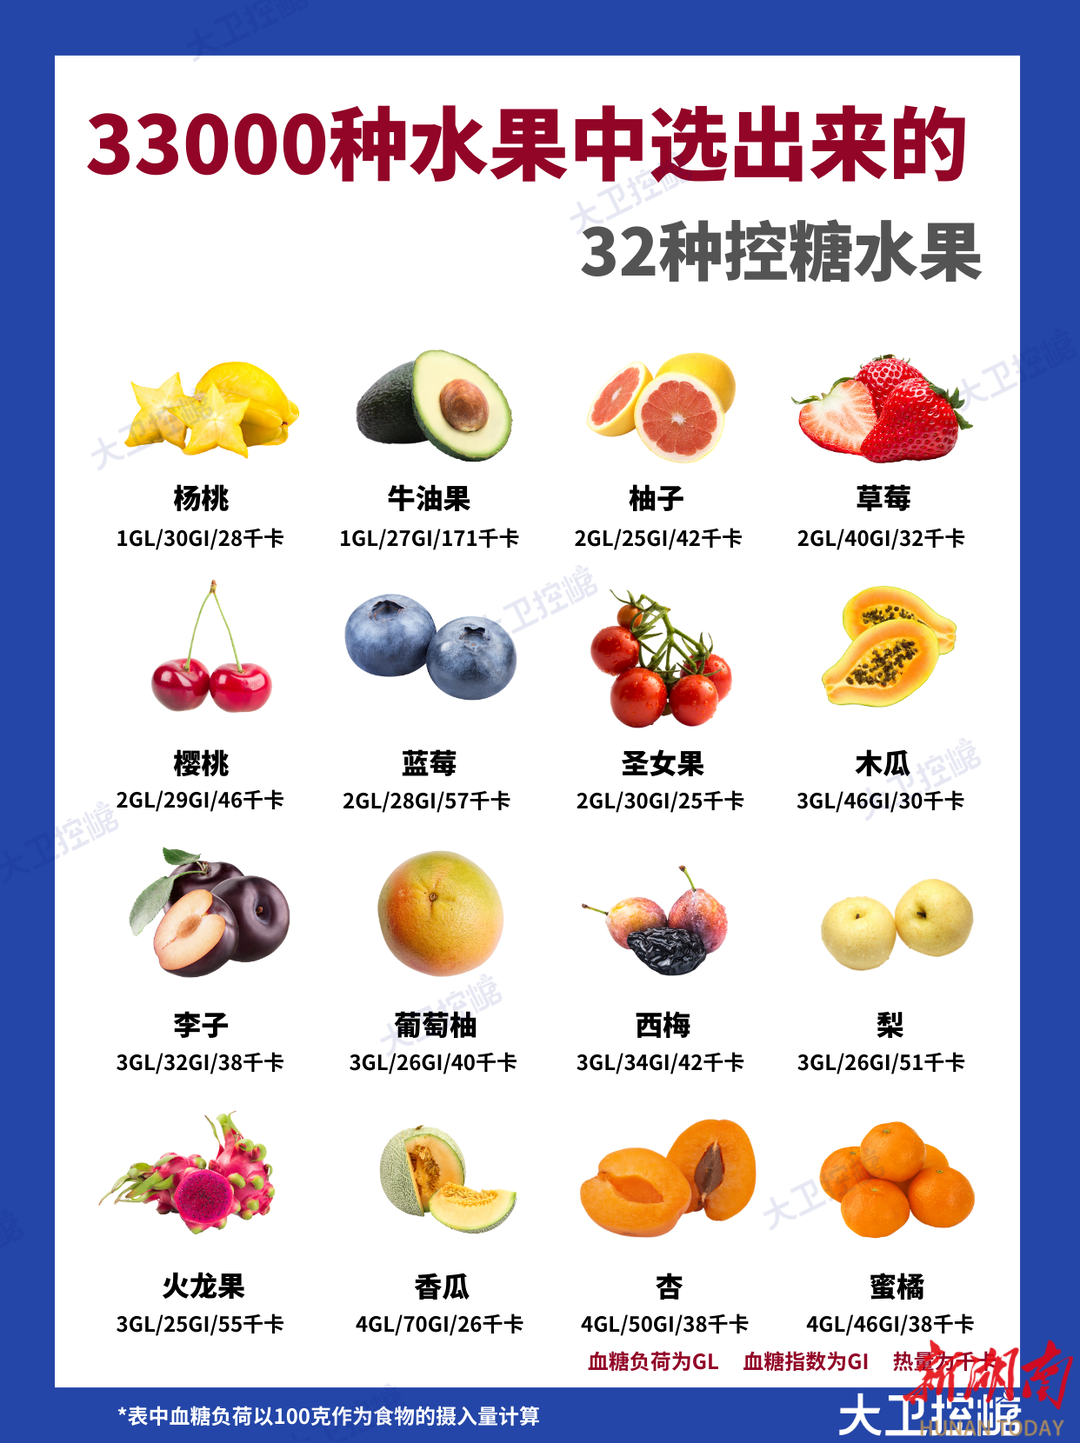 【大卫控糖】33000种水果中选出来的32种控糖水果